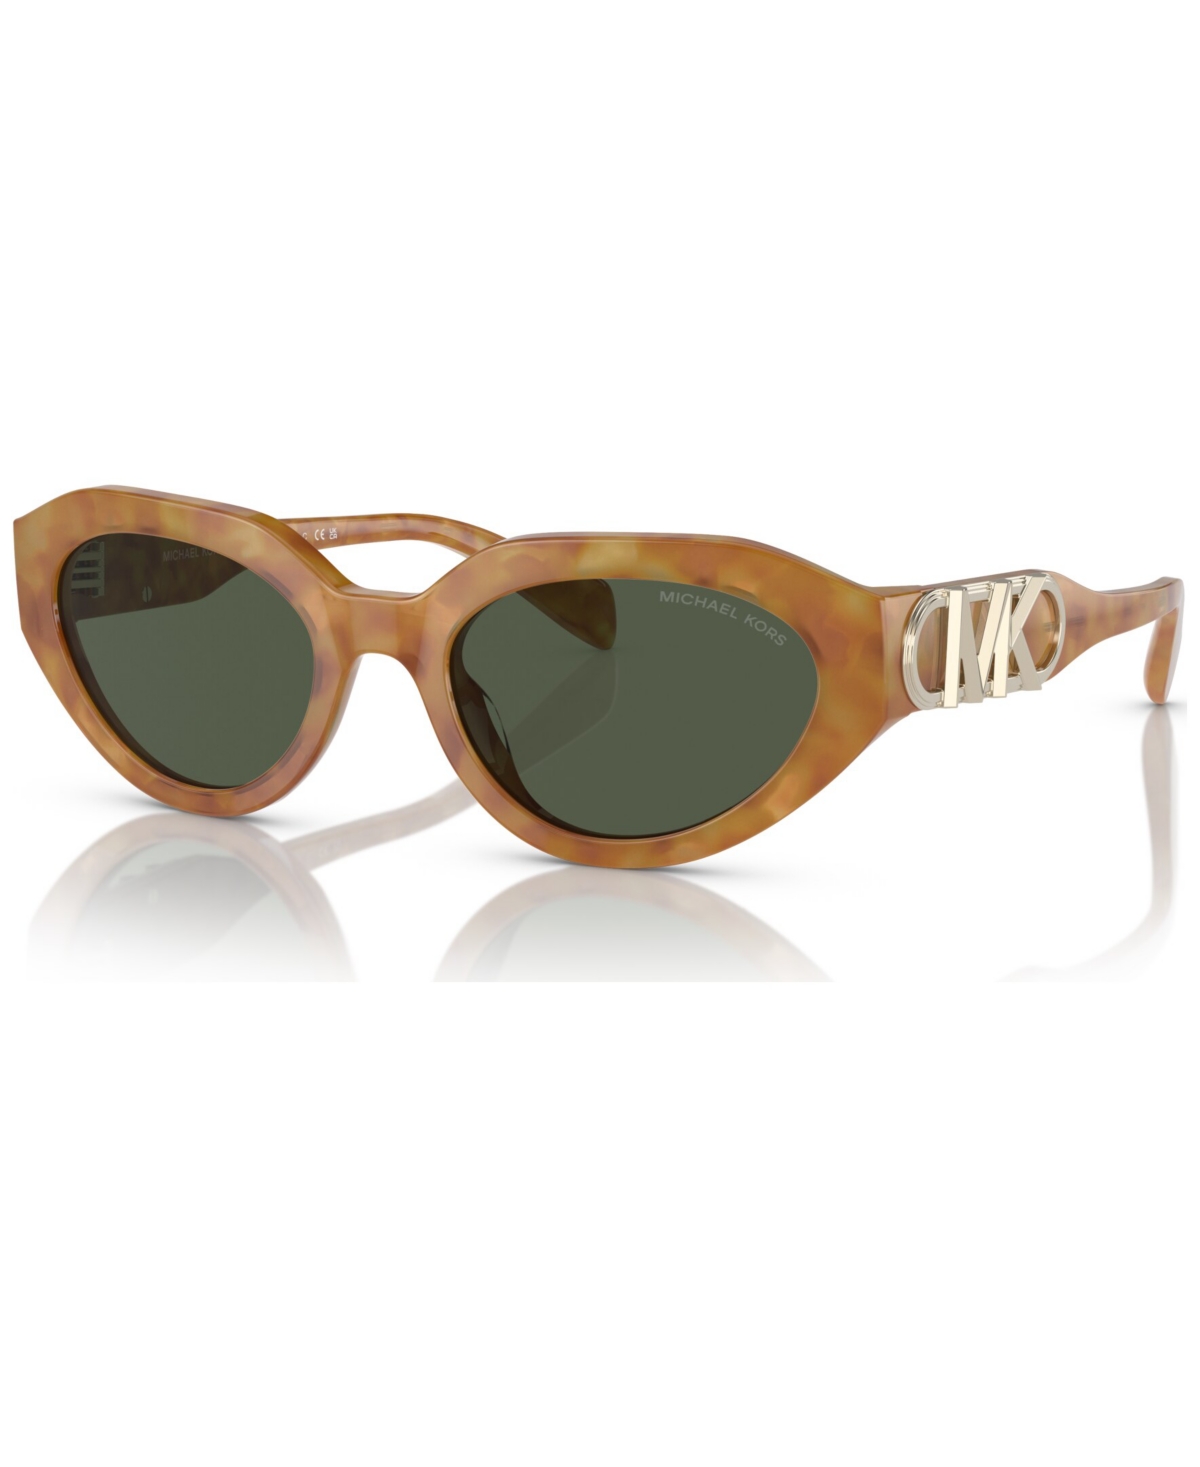 Michael Kors Women's Empire Oval Sunglasses, Mk2192 In Amber Tortoise